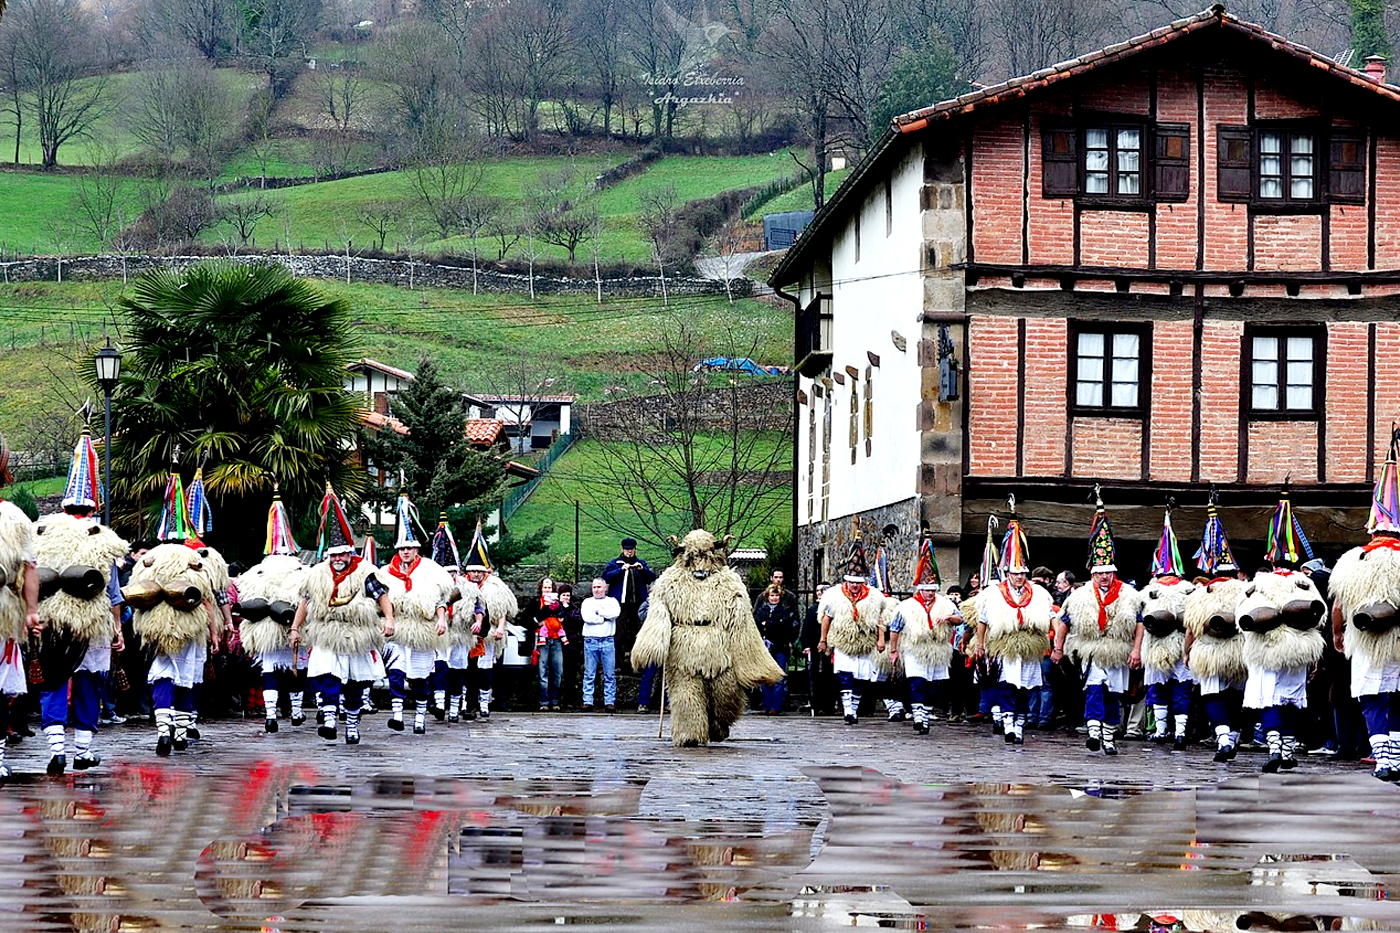 3OR Baskische carnaval: joaldunak op het plein